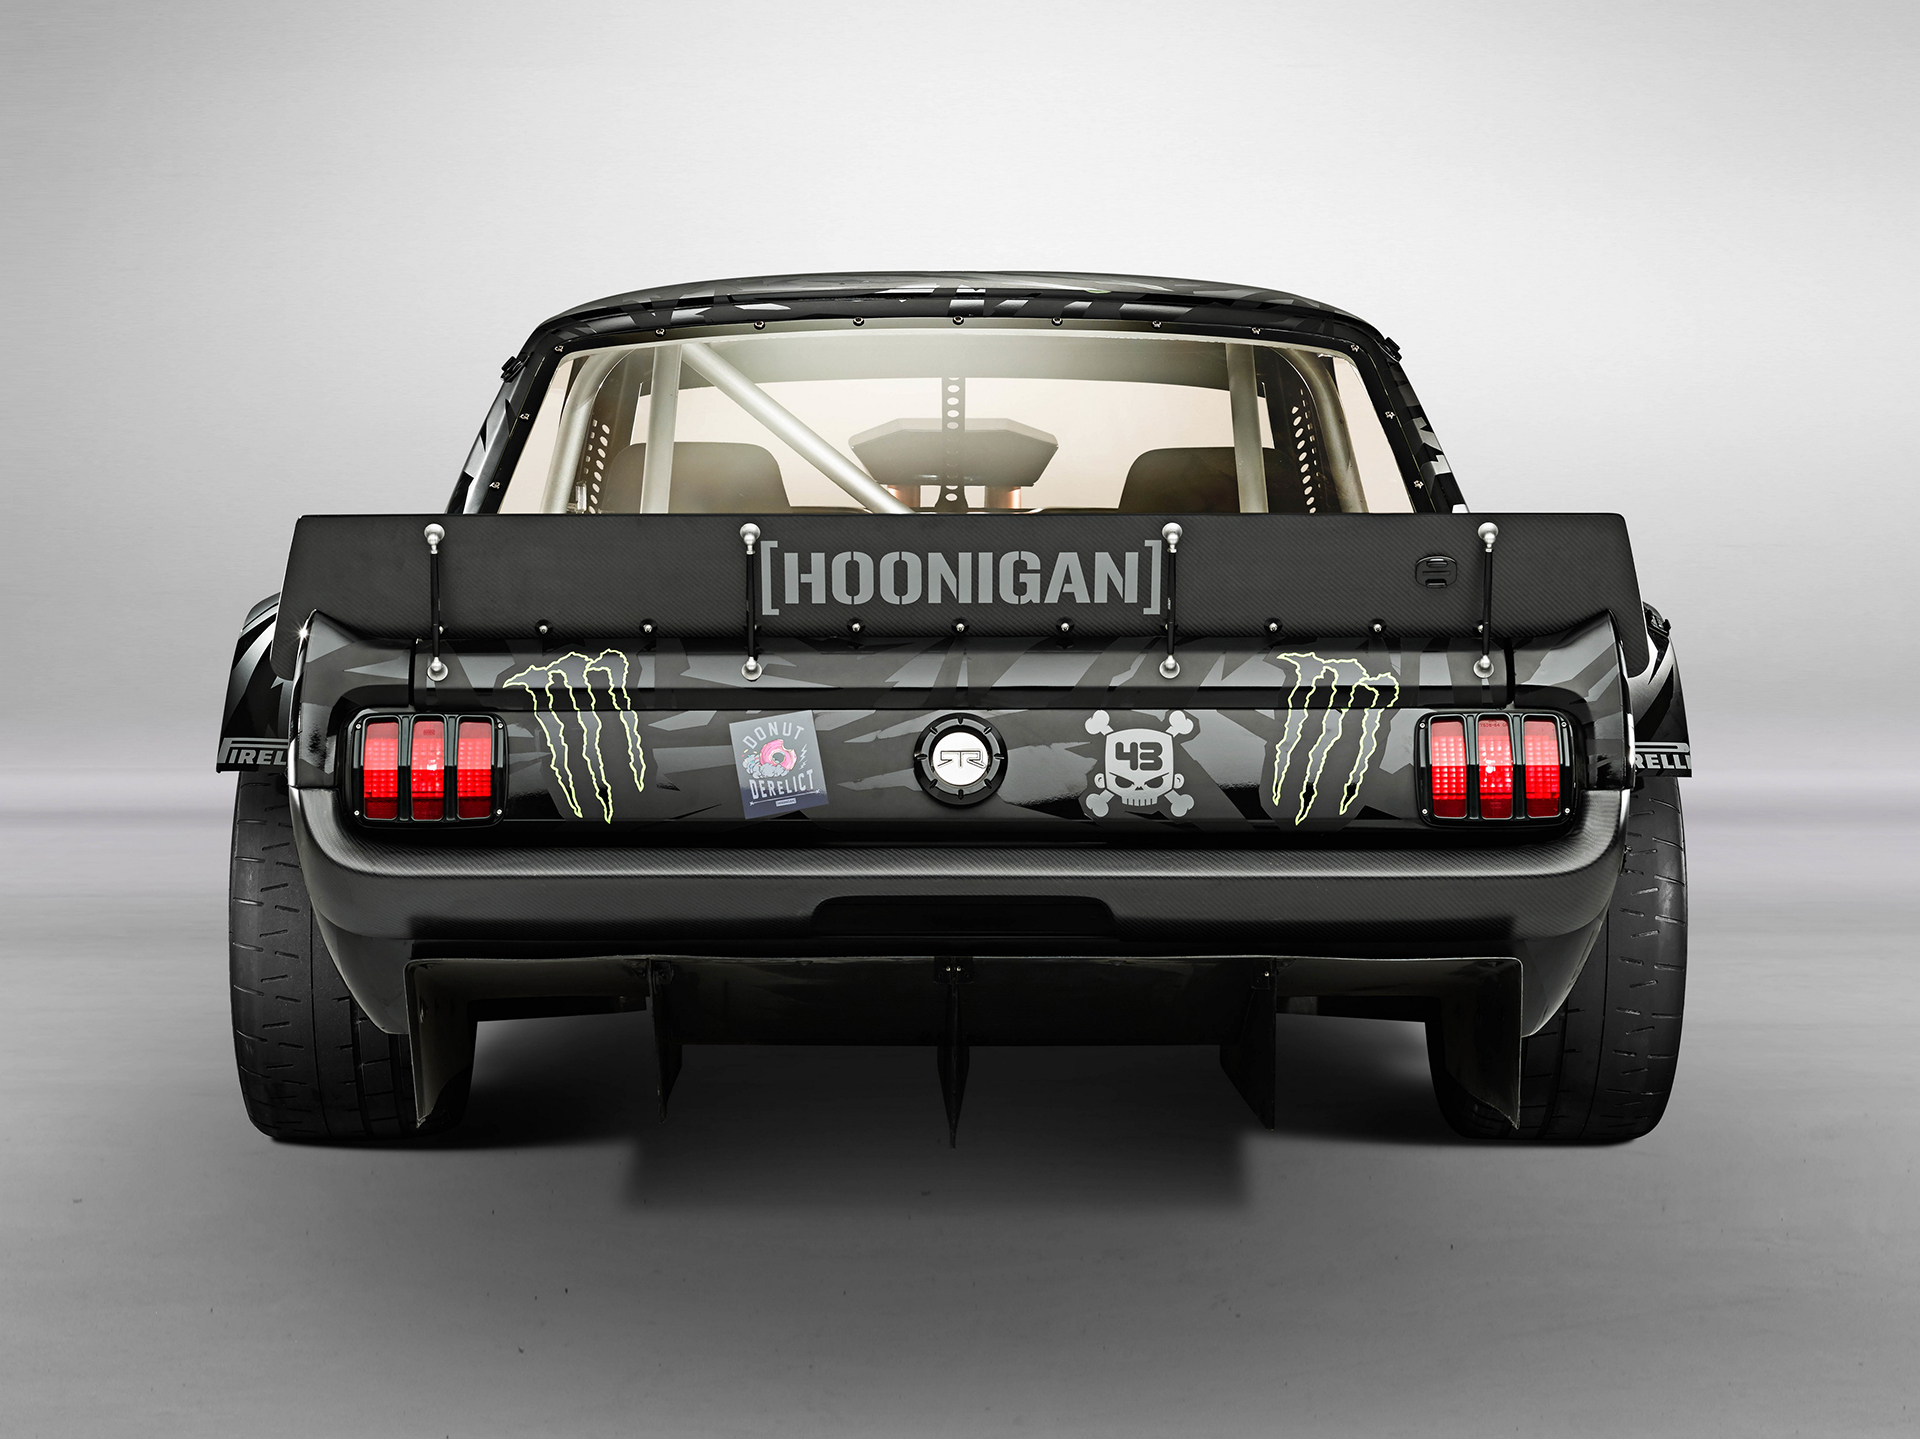 1965 Ford Mustang Hoonicorn RTR - 2015 - arrière / rear